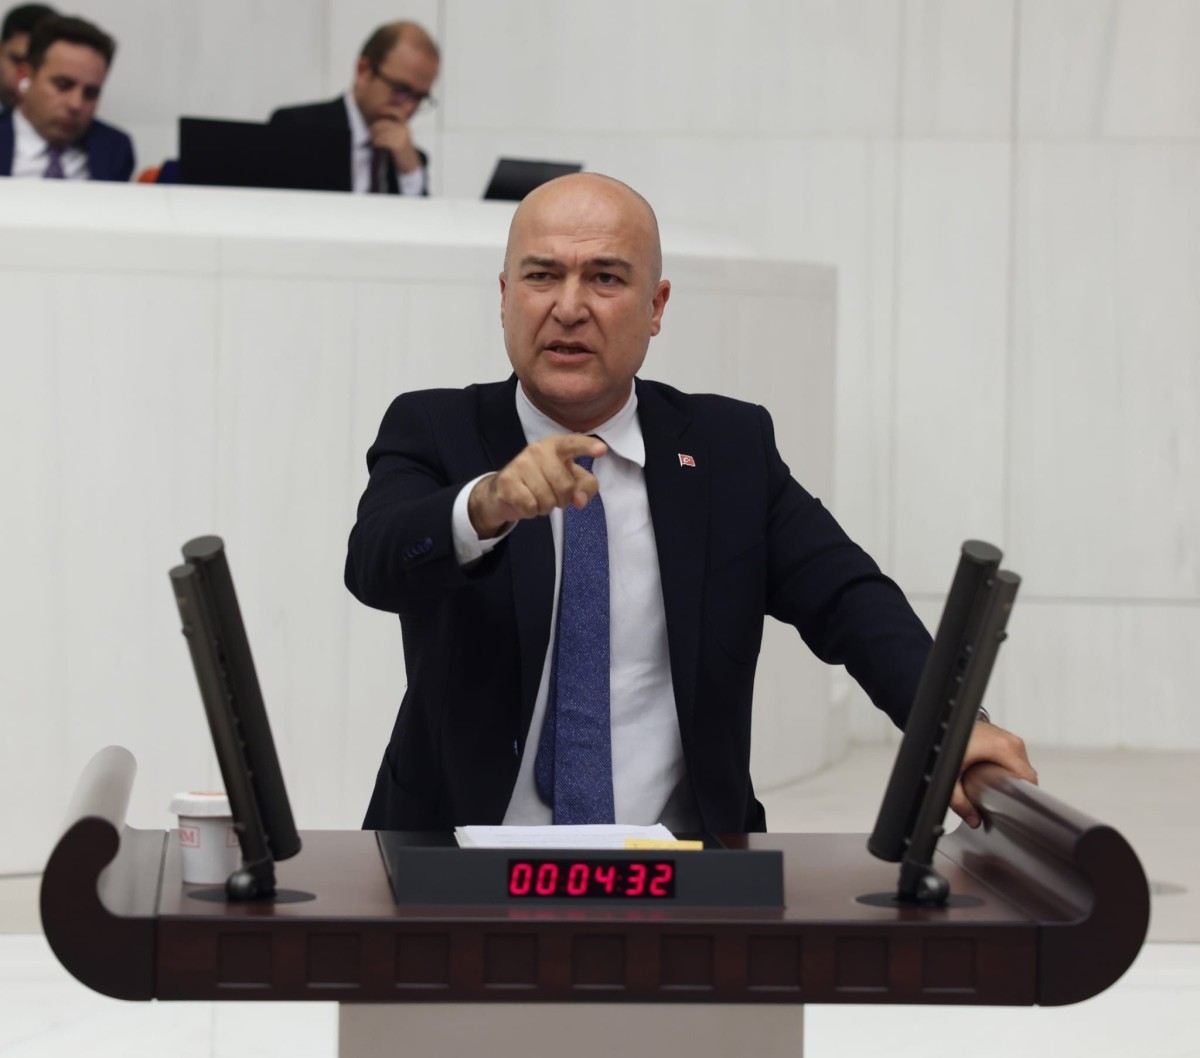 CHP’nin astsubaylara tazminat kanun teklifi AK Parti ve MHP oylarıyla reddedildi  - Videolu Haber